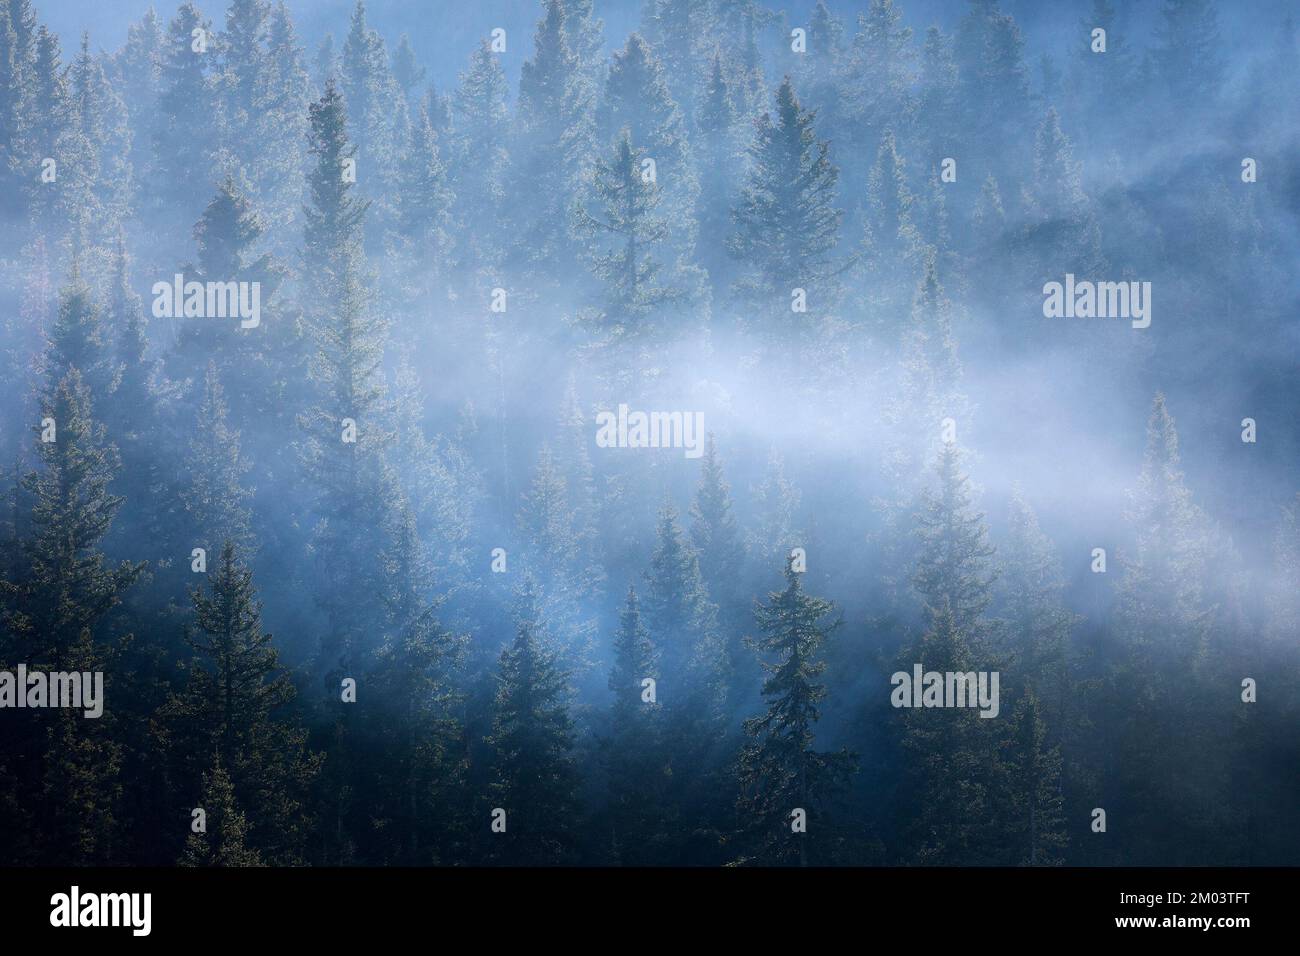 Fumer dans la forêt boréale à la suite des feux de forêt dans le parc national Banff, Alberta, Canada Banque D'Images